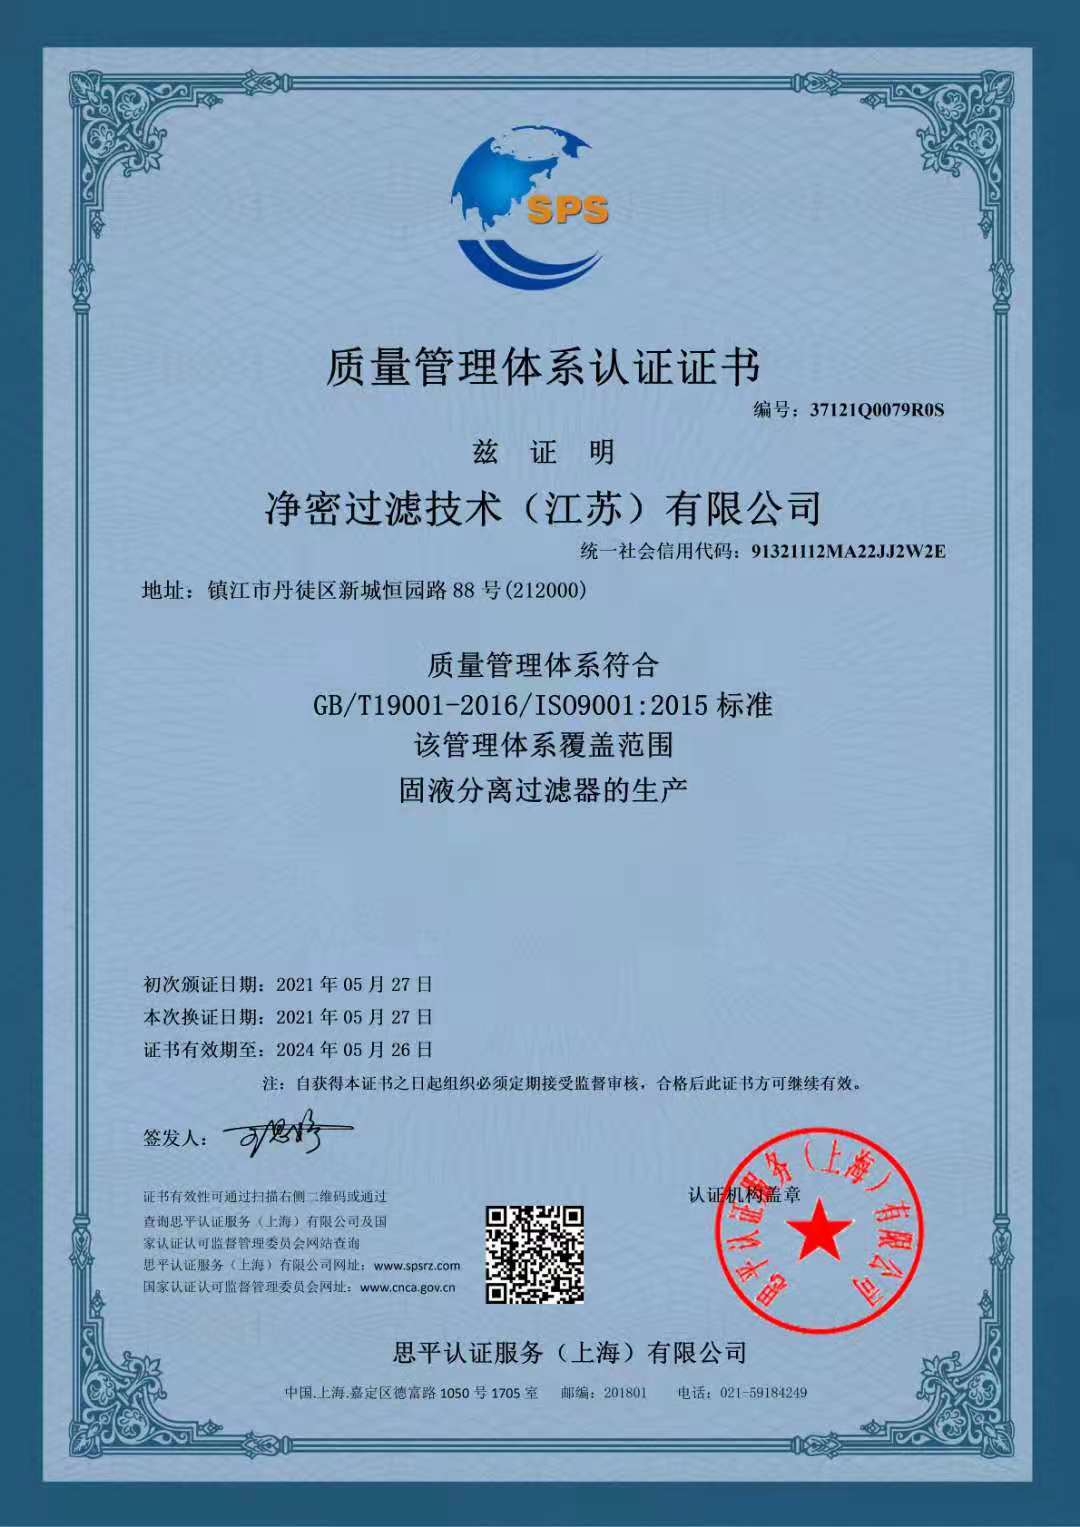 质量管理体系认证证书CN.jpg